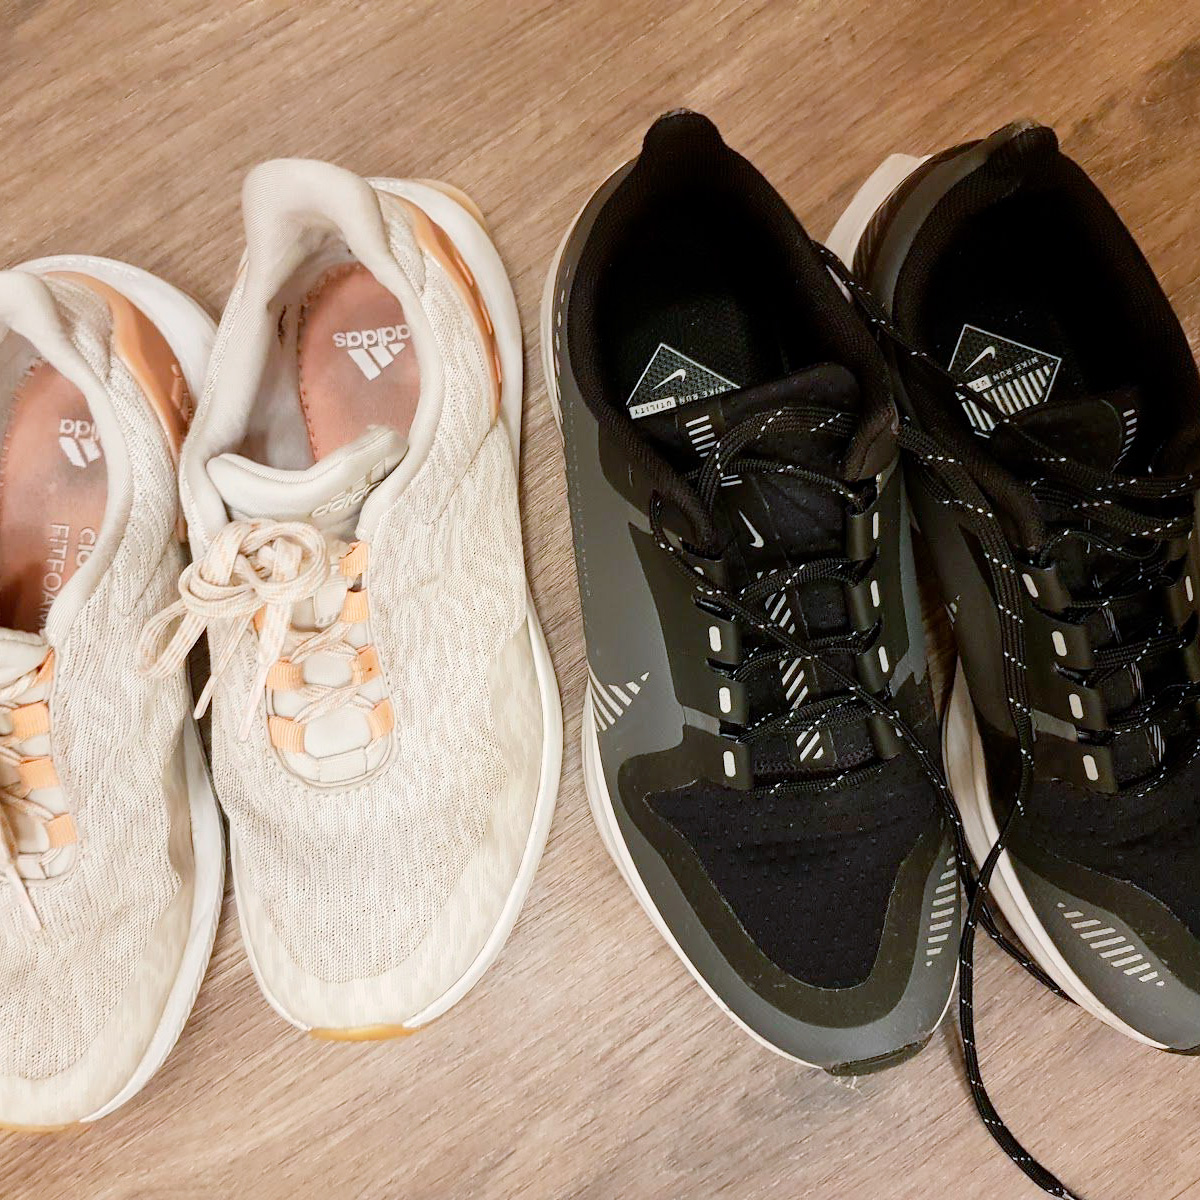 Слева кроссовки для силовых тренировок, справа — для бега